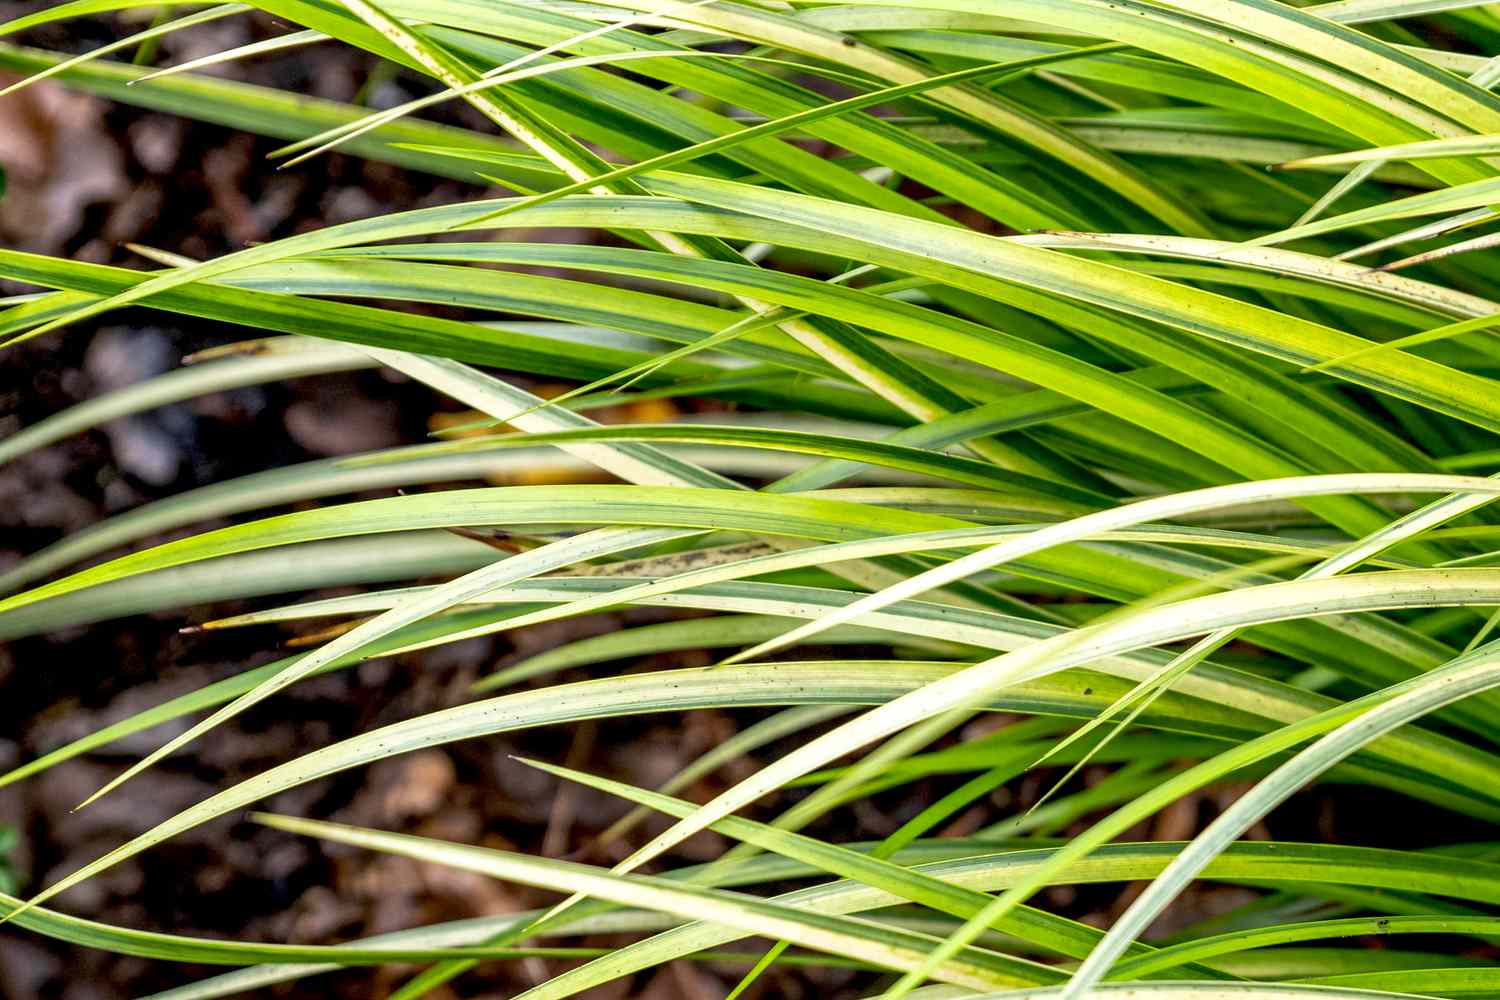 Acorus-Pflanze mit leuchtend grünen und gelbgrünen schwertartigen Blättern in Nahaufnahme